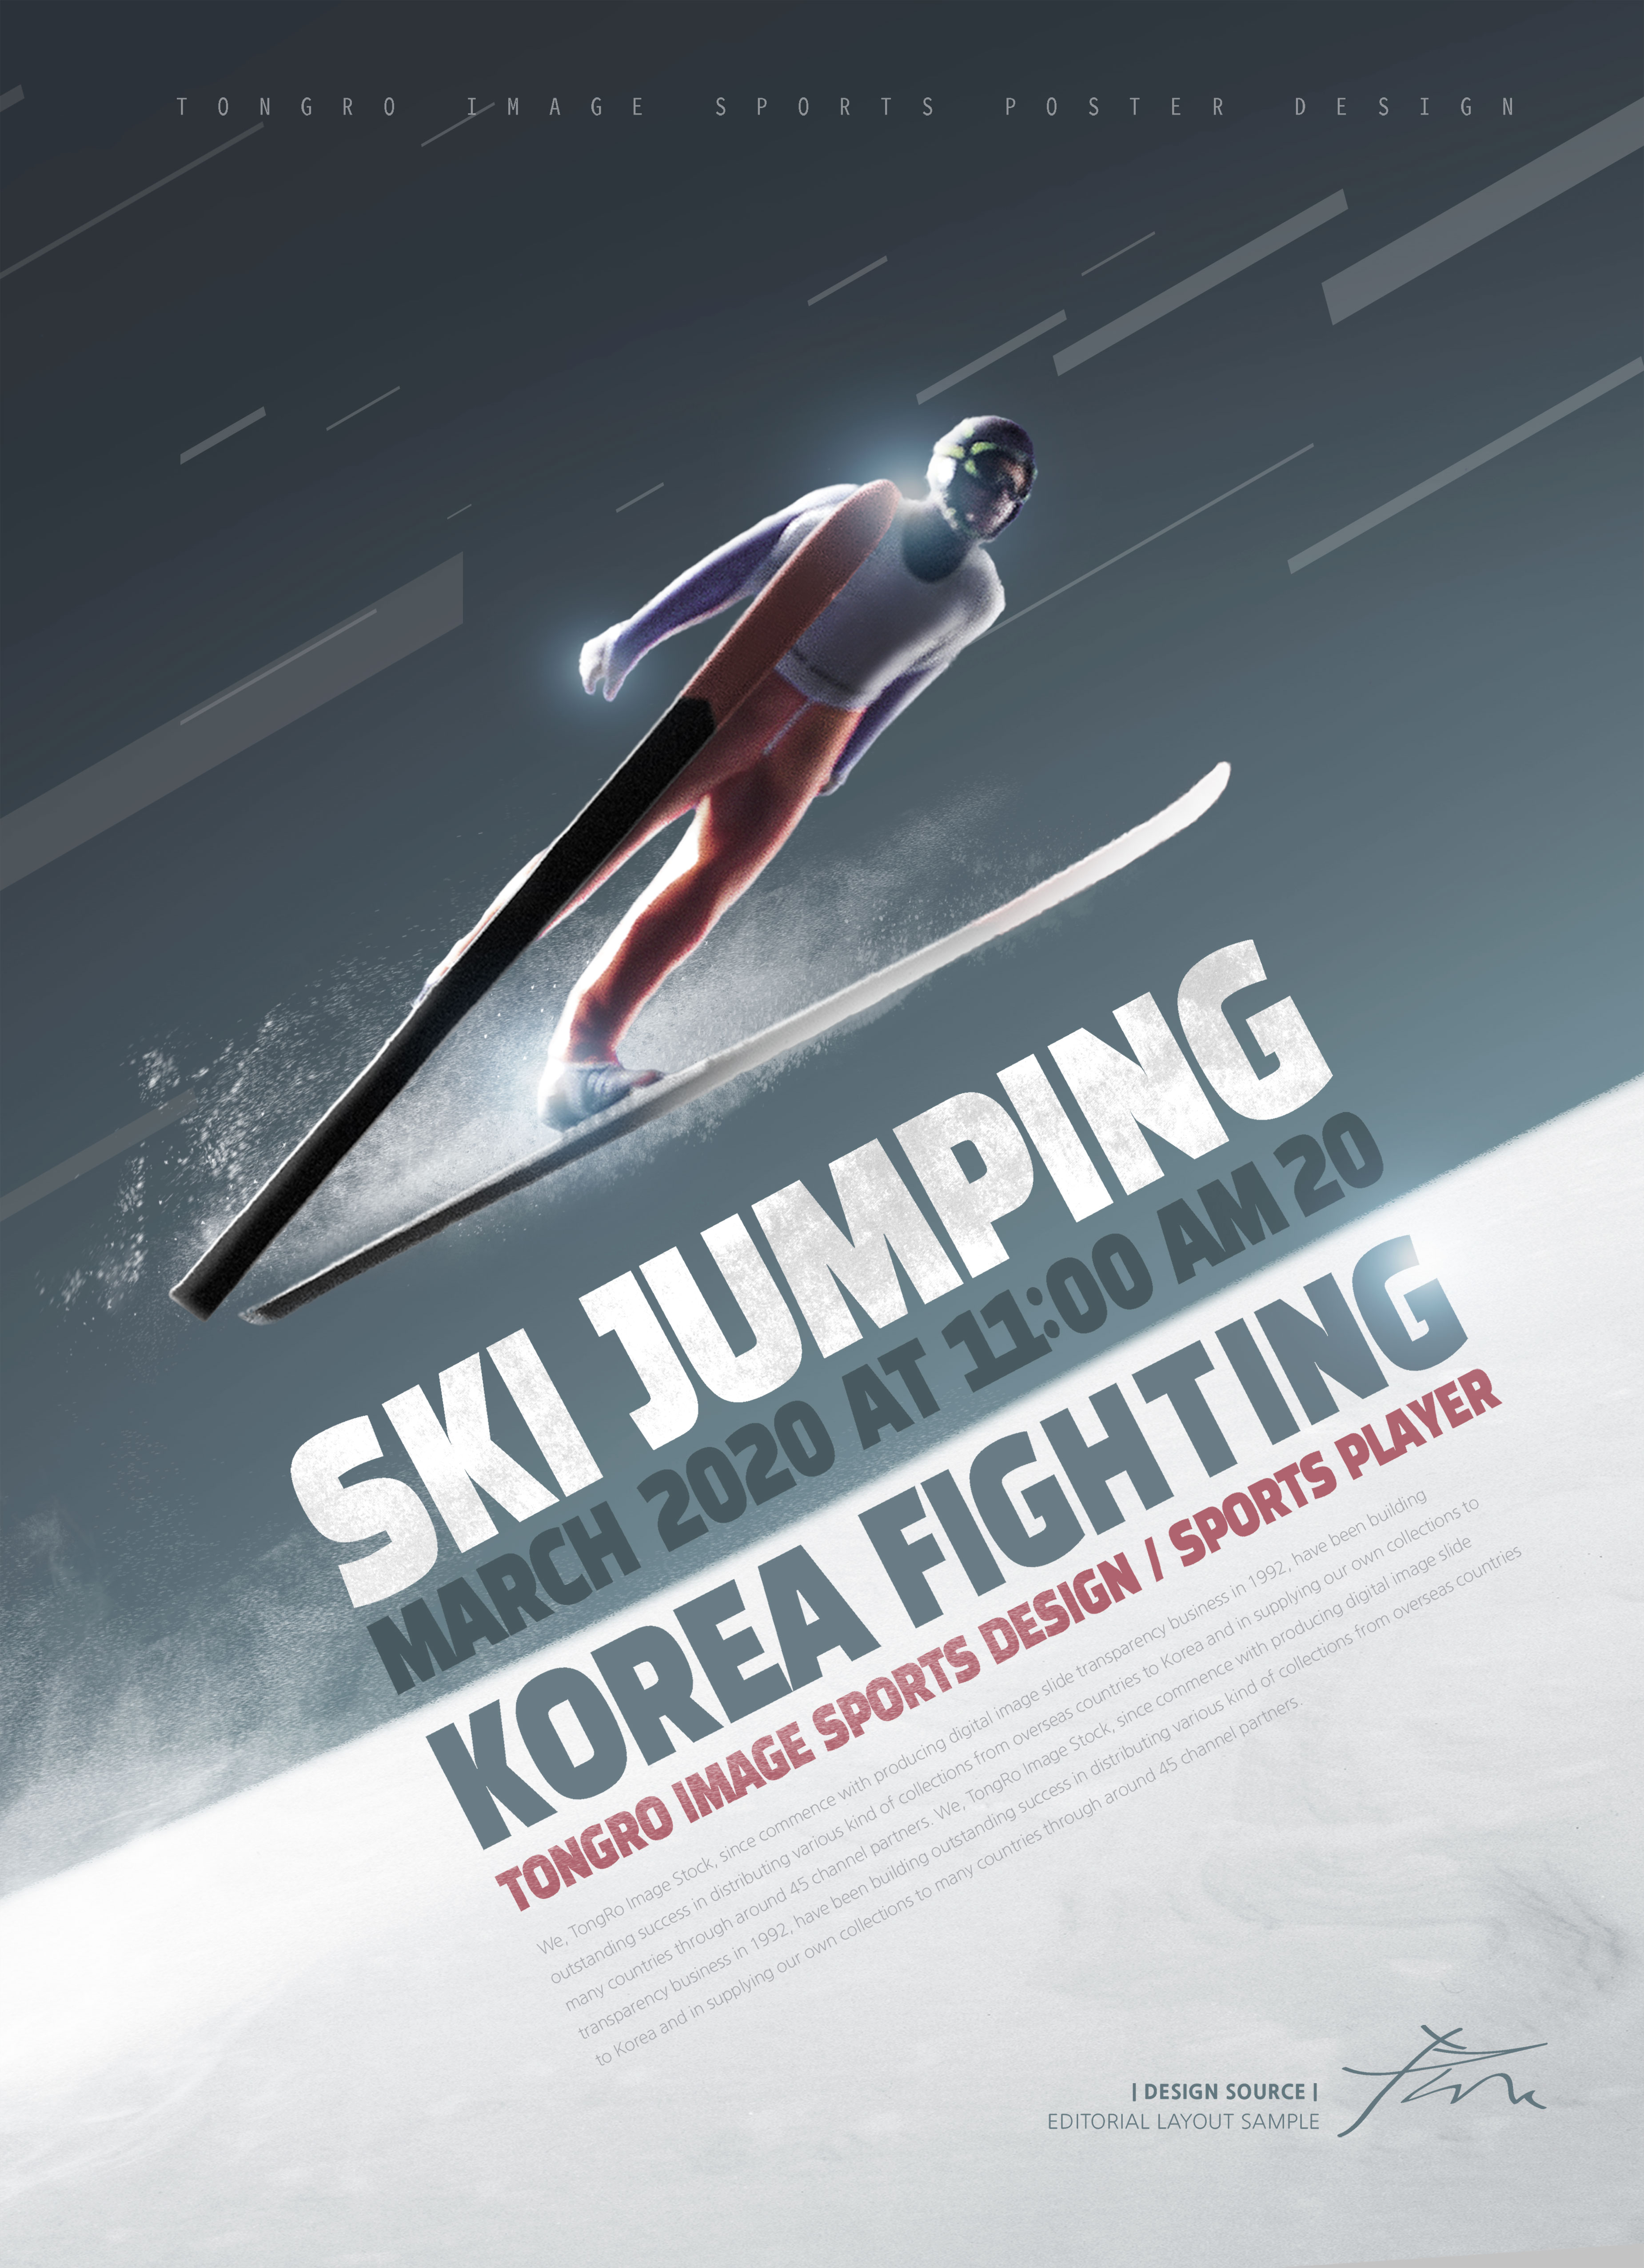 跳台滑雪体育运动宣传海报PSD素材第一素材精选[PSD]插图